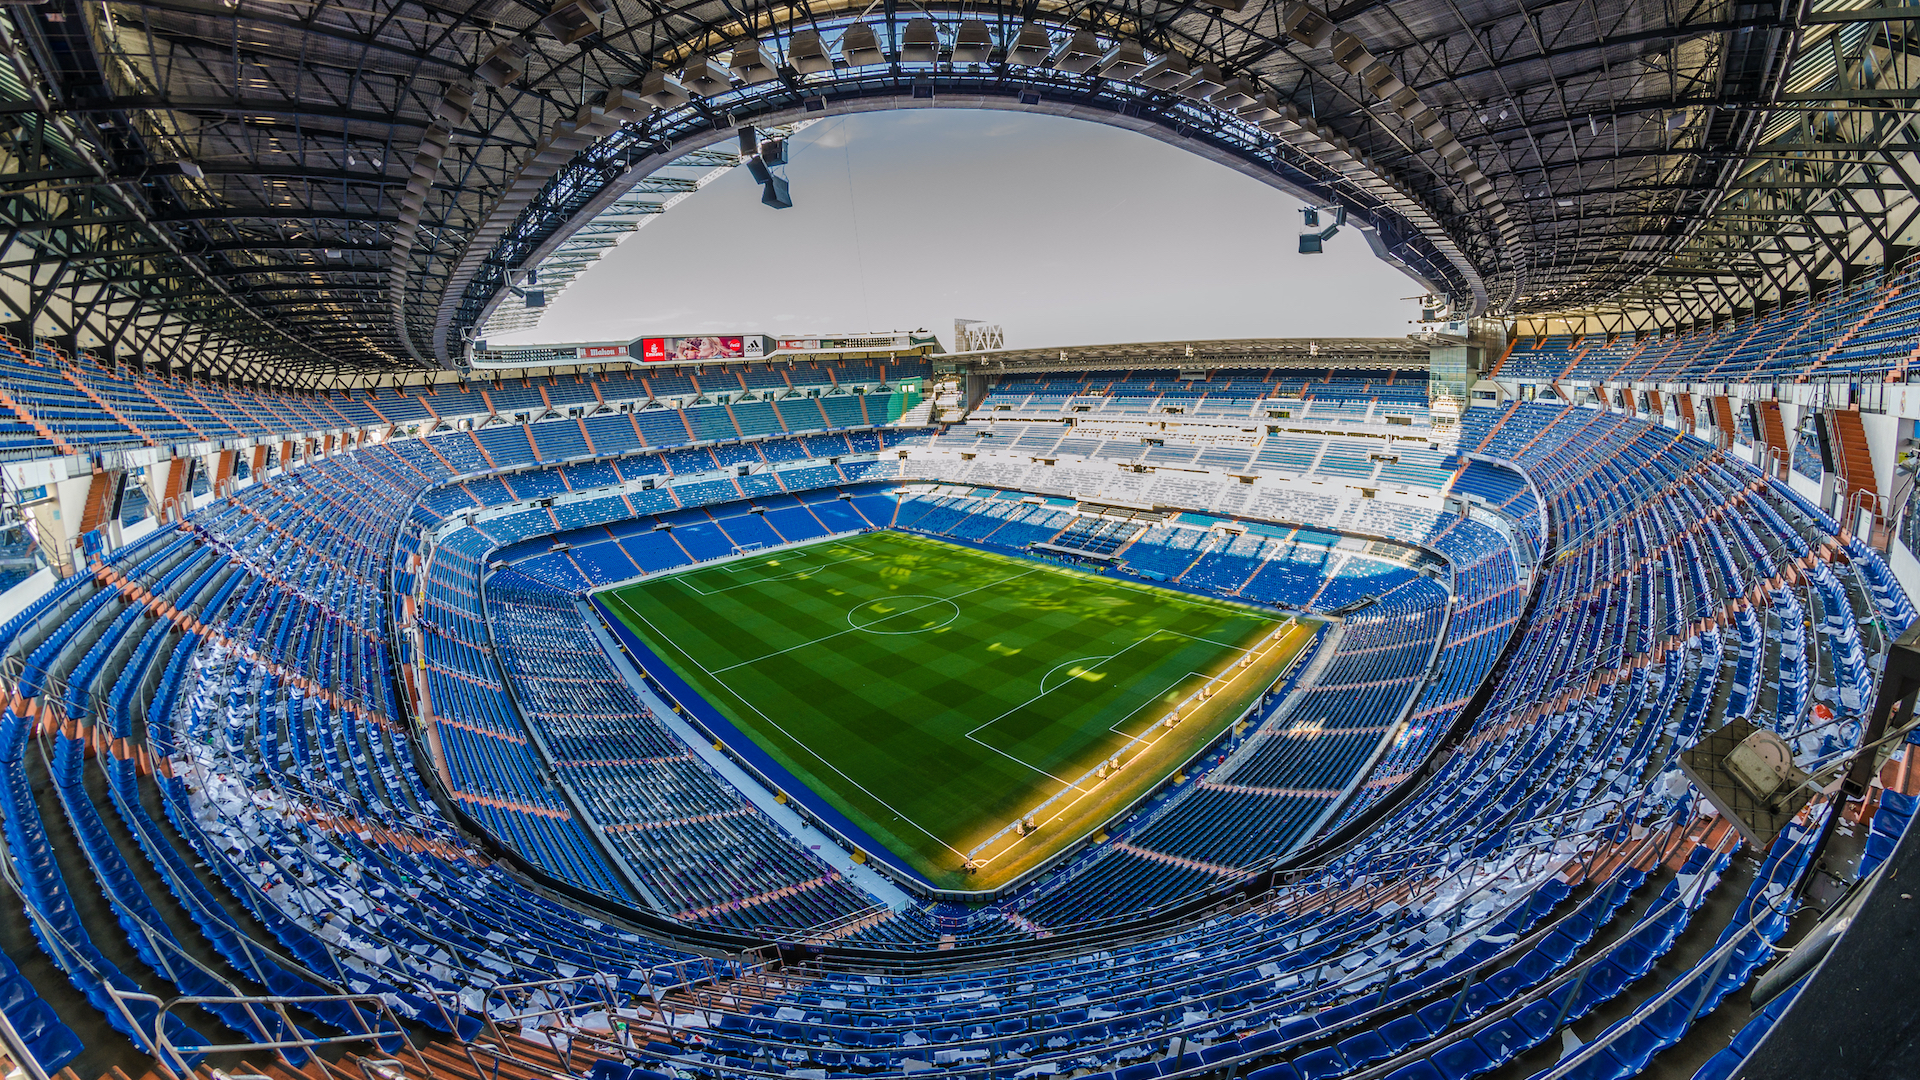 Real Madrid's stadium